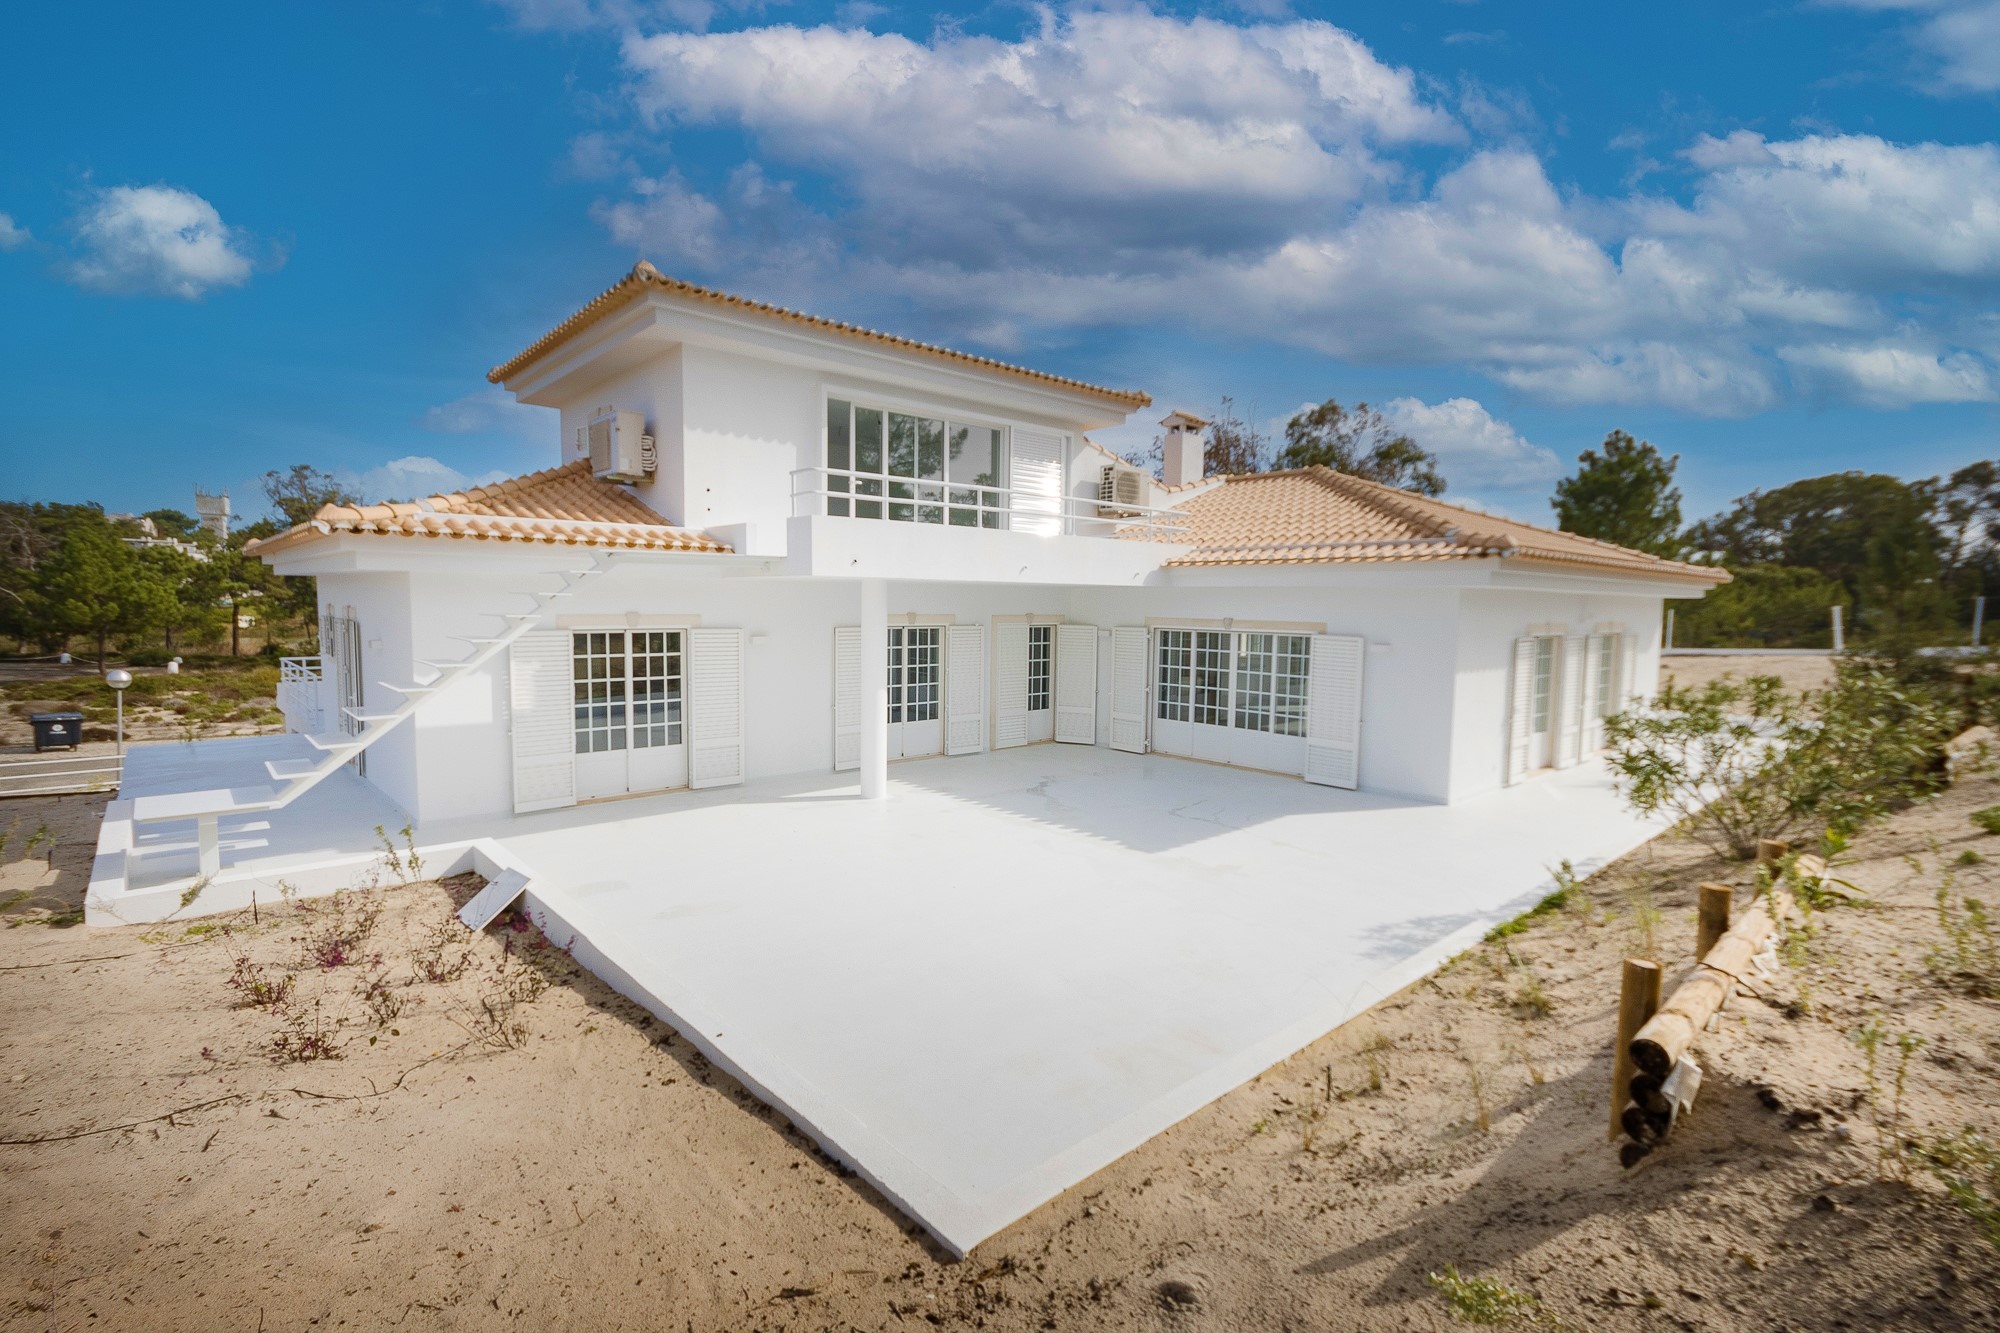 For Sale Detached Villa Troia Portugal Mor4332eb000 Destaque 1